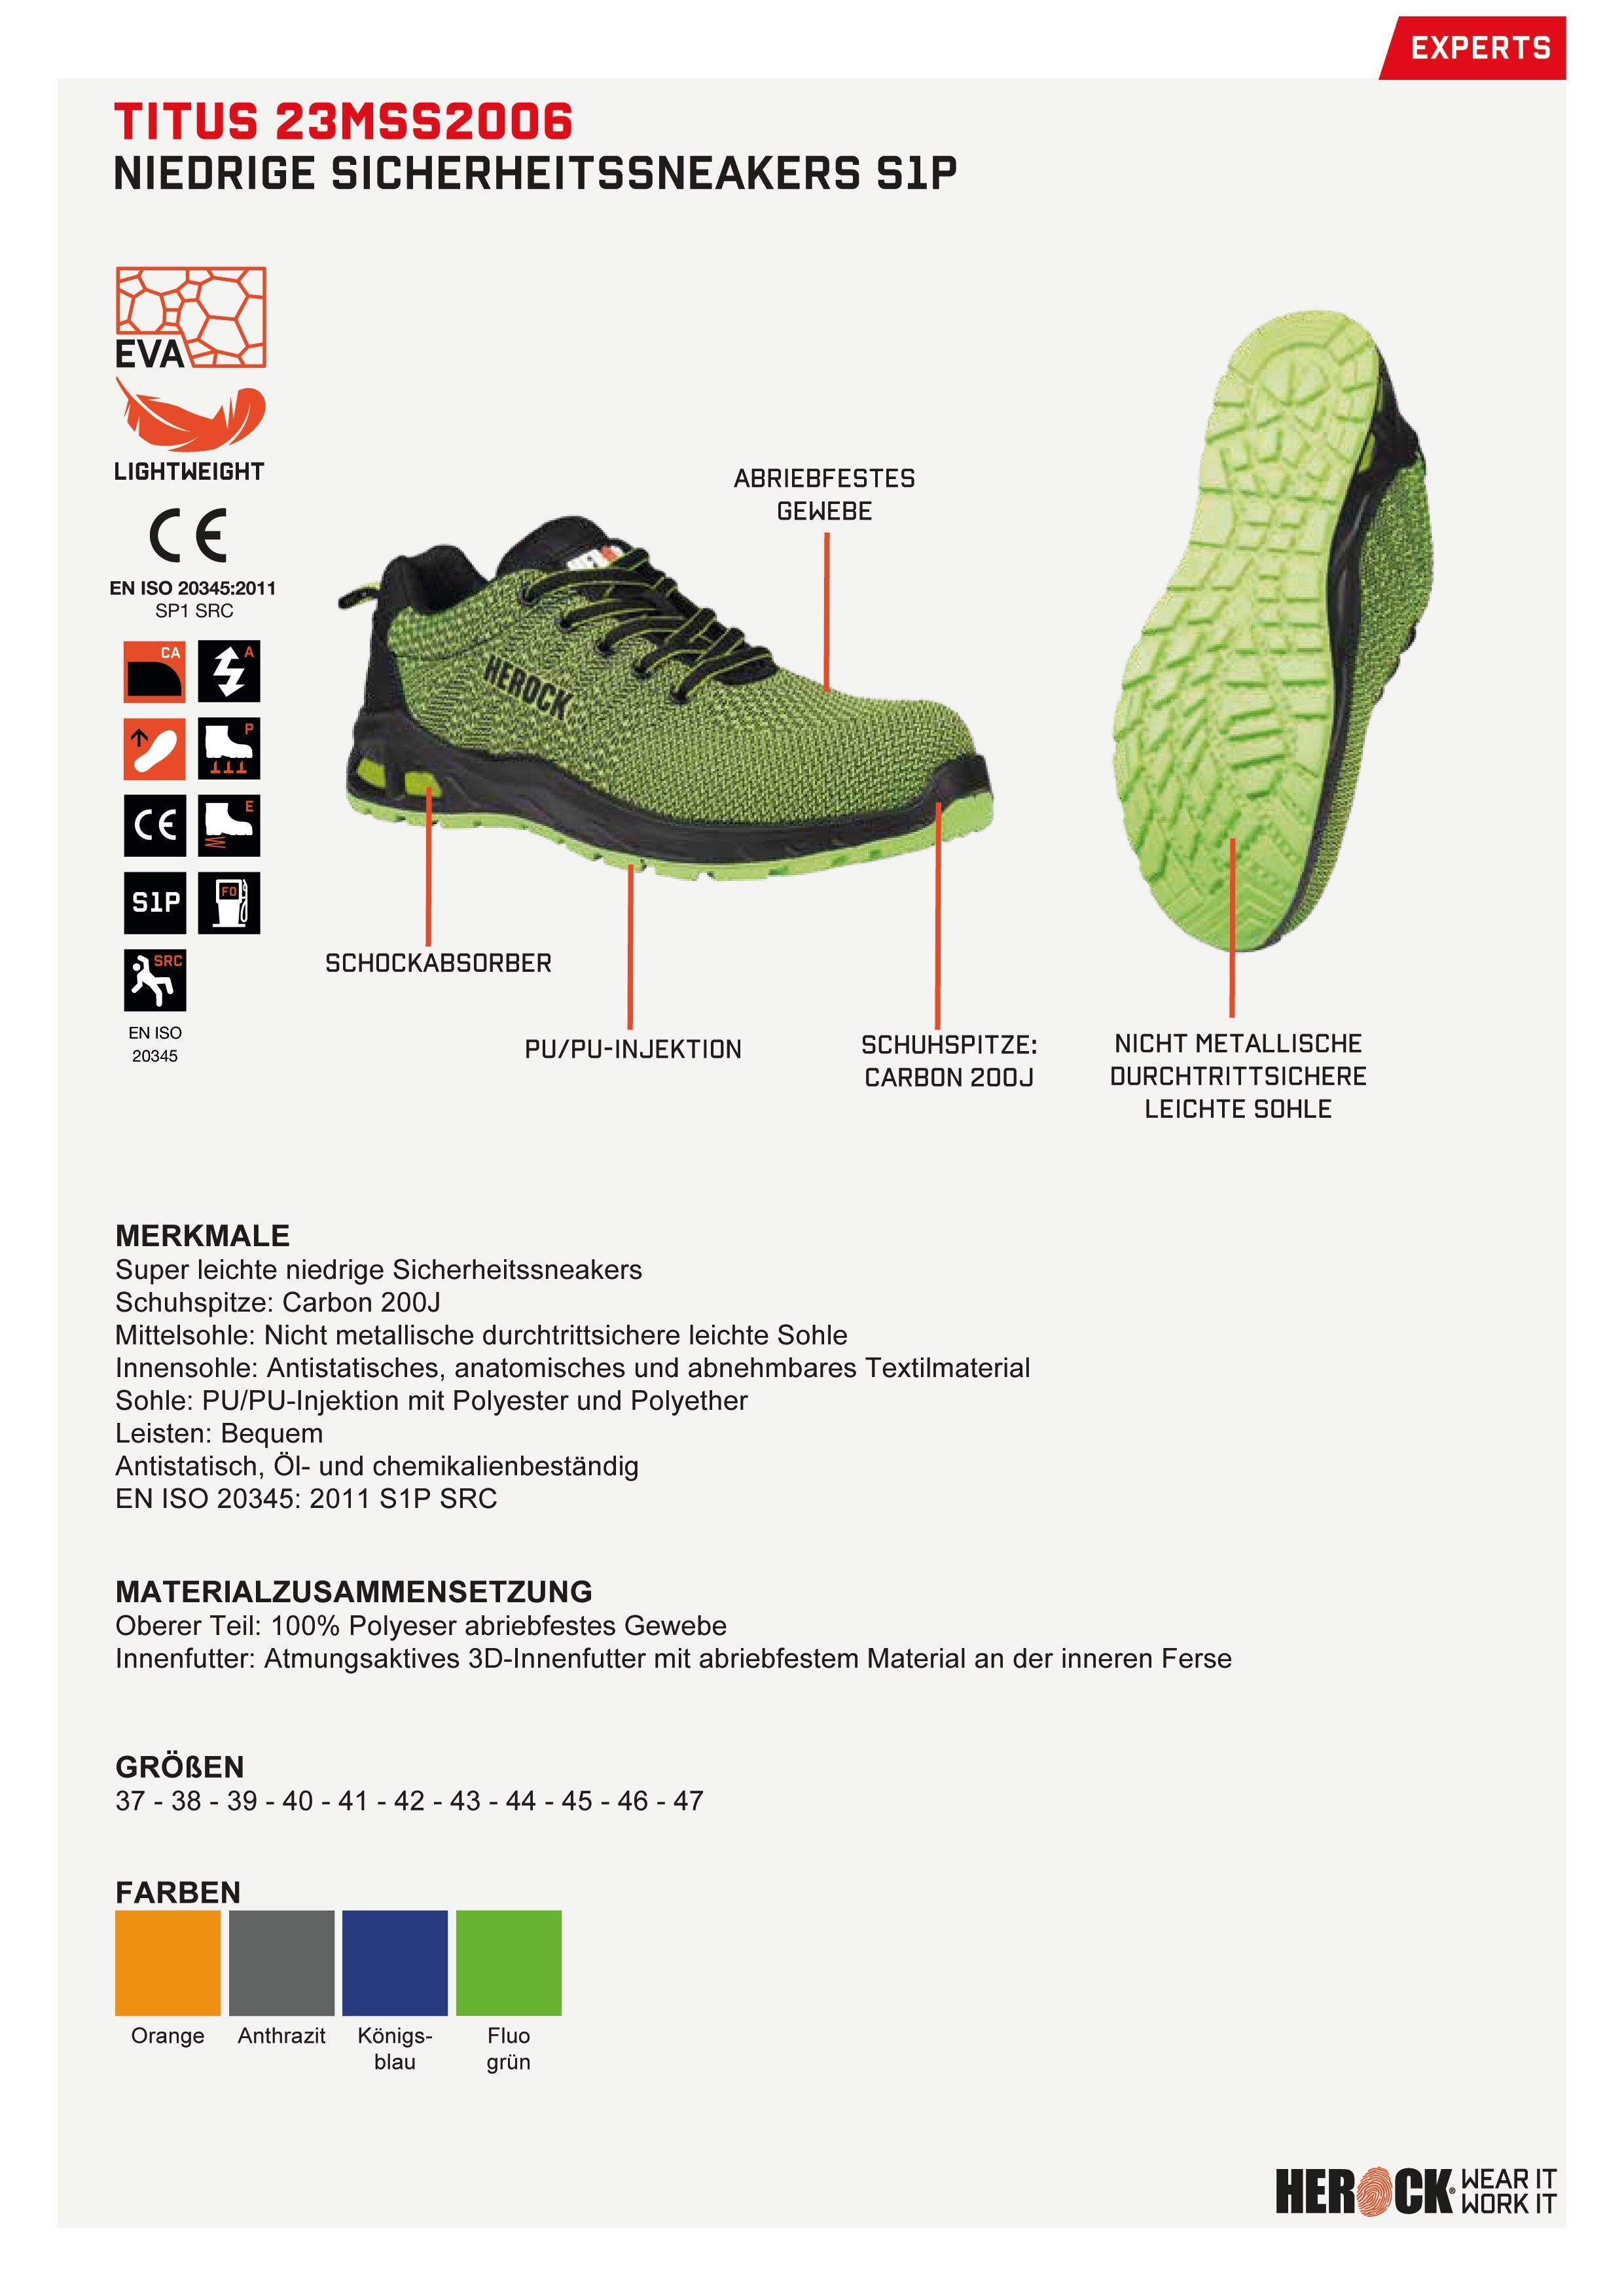 Sicherheitssneakers Sicherheitsschuh leicht, rutschhemmend fluo-grün Herock Titus Niederige S1P durchtrittschutz, Extrem Fiberglaskappe,